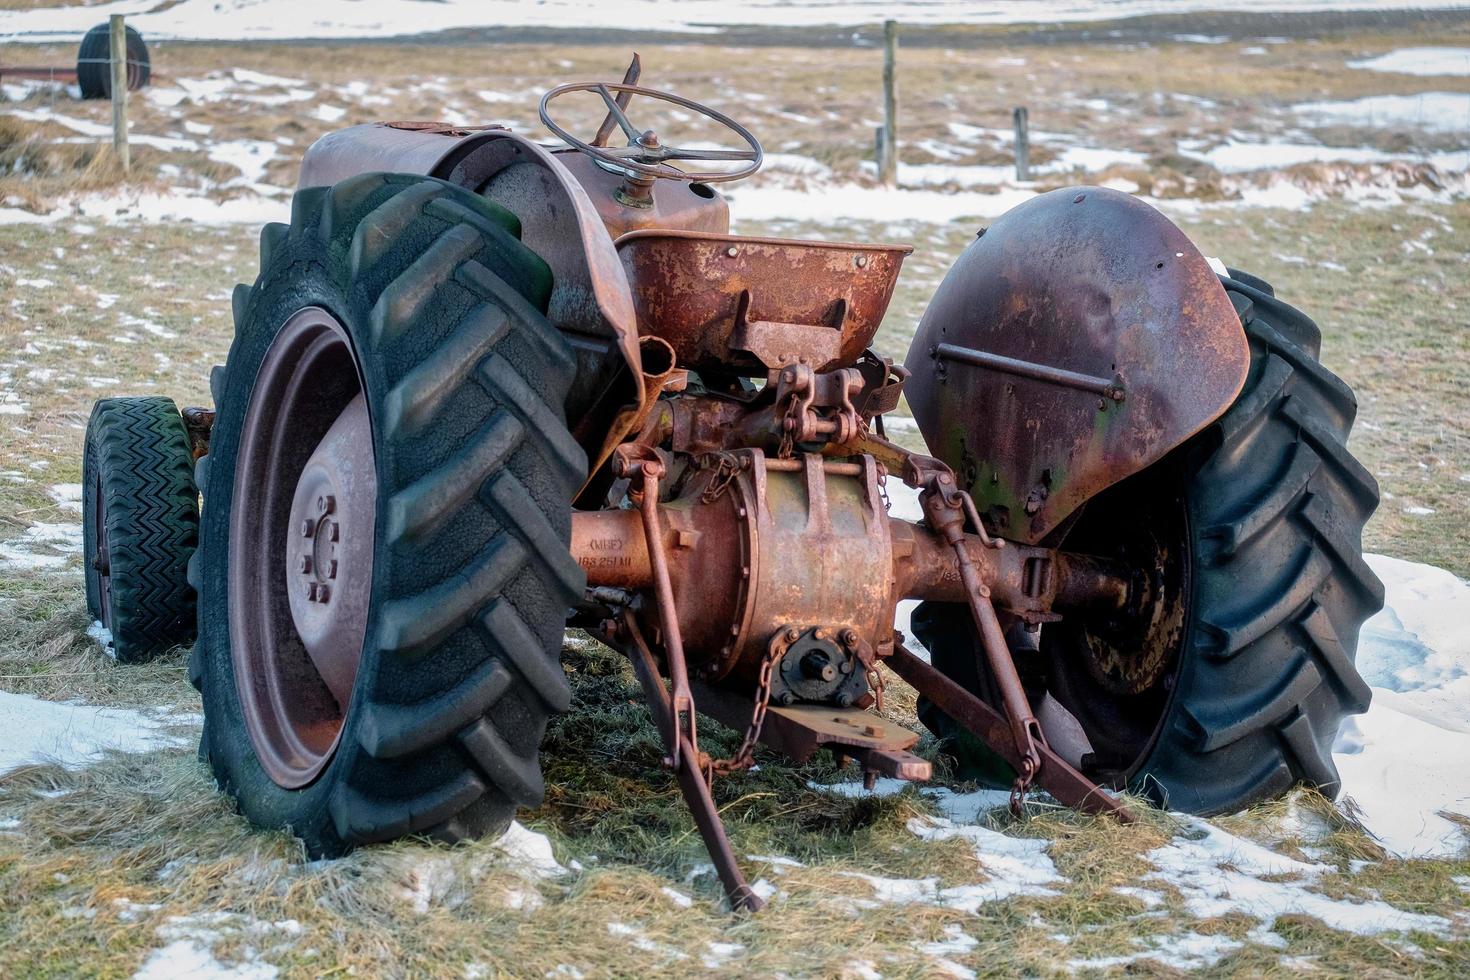 islandia, 2016. tractor oxidado abandonado foto